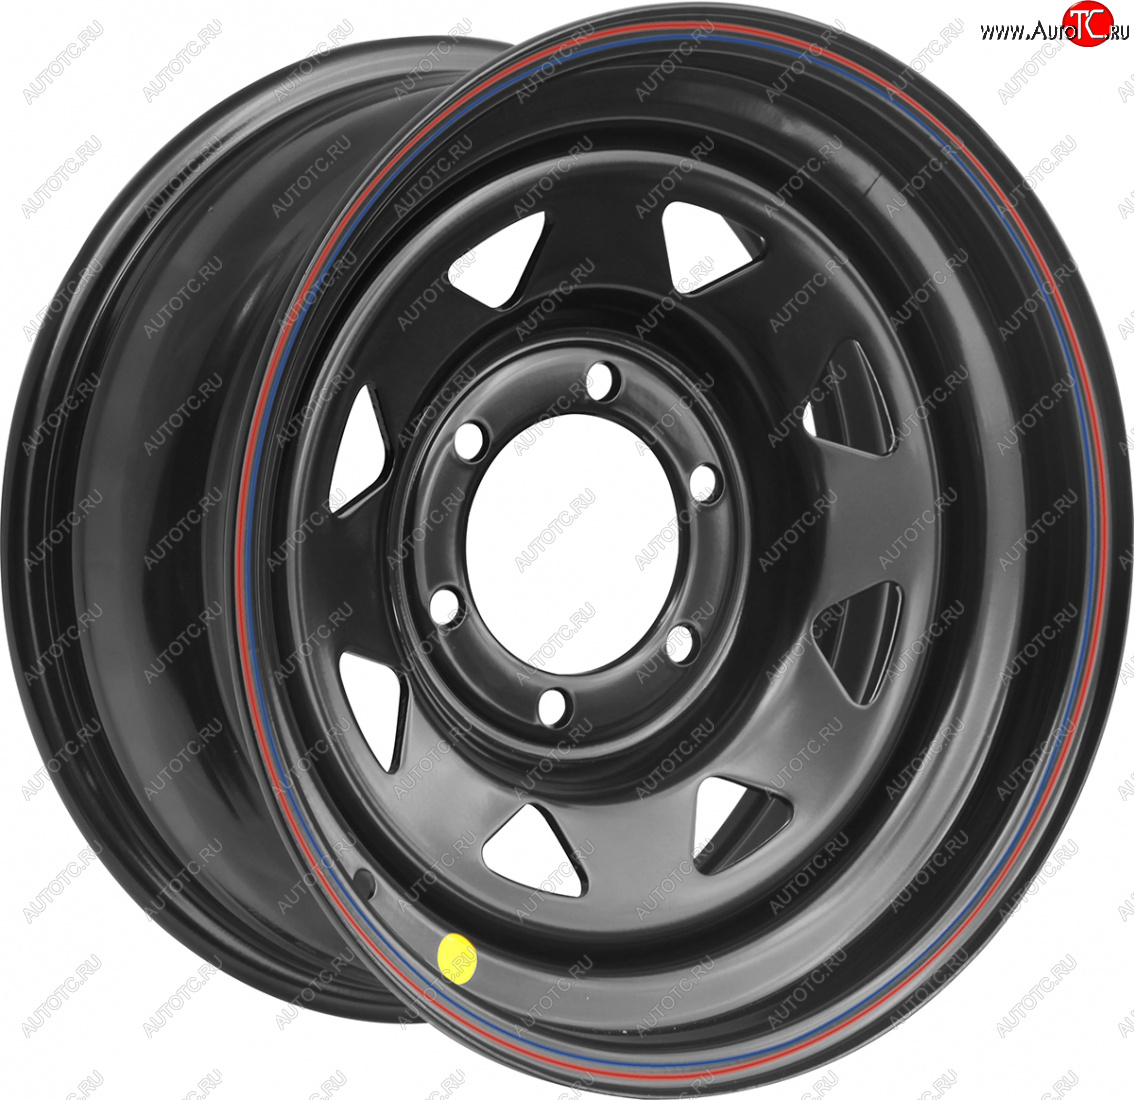 5 999 р. Штампованый диск OFF-ROAD Wheels (стальной усиленный, треугольник мелкий - черный). 8.0 x 17 Hyundai Galloper 5 дв. (1998-2003) 6x139.7xDIA110.0xET0.0 